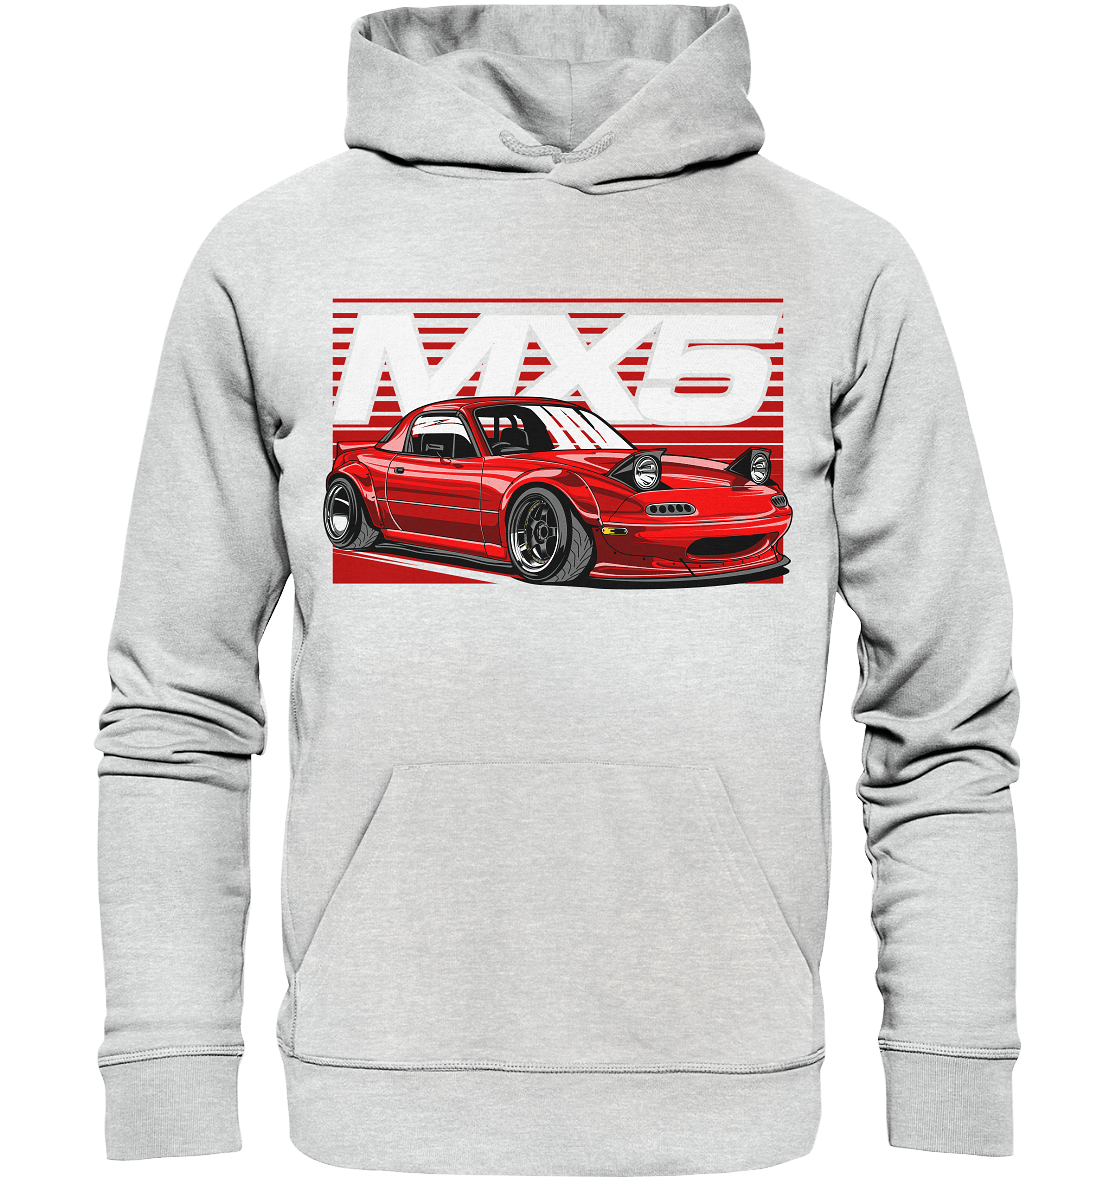 Widebody Mazda MX5 - Premium Unisex Hoodie - MotoMerch.de